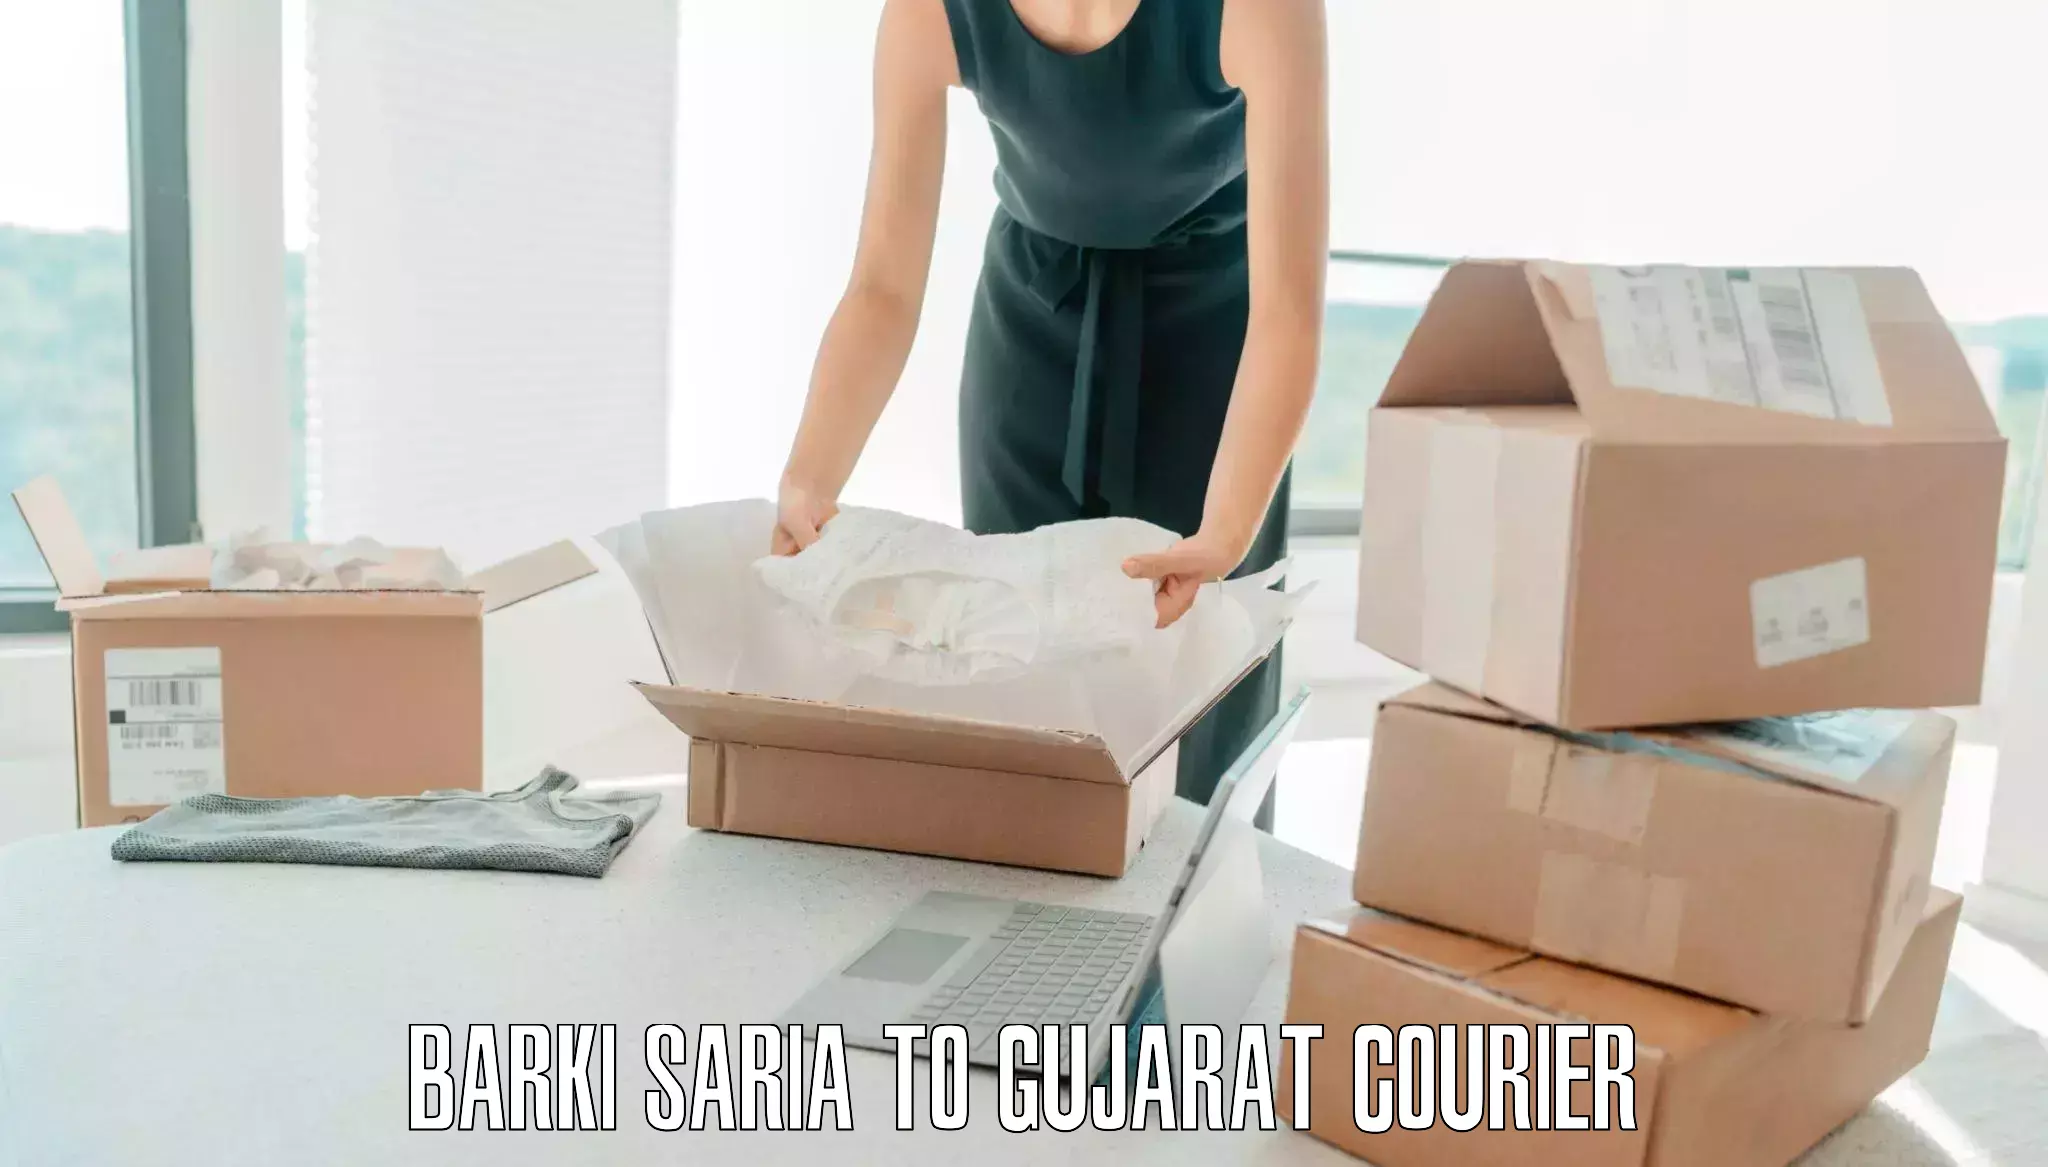 Holiday baggage shipping Barki Saria to Gujarat